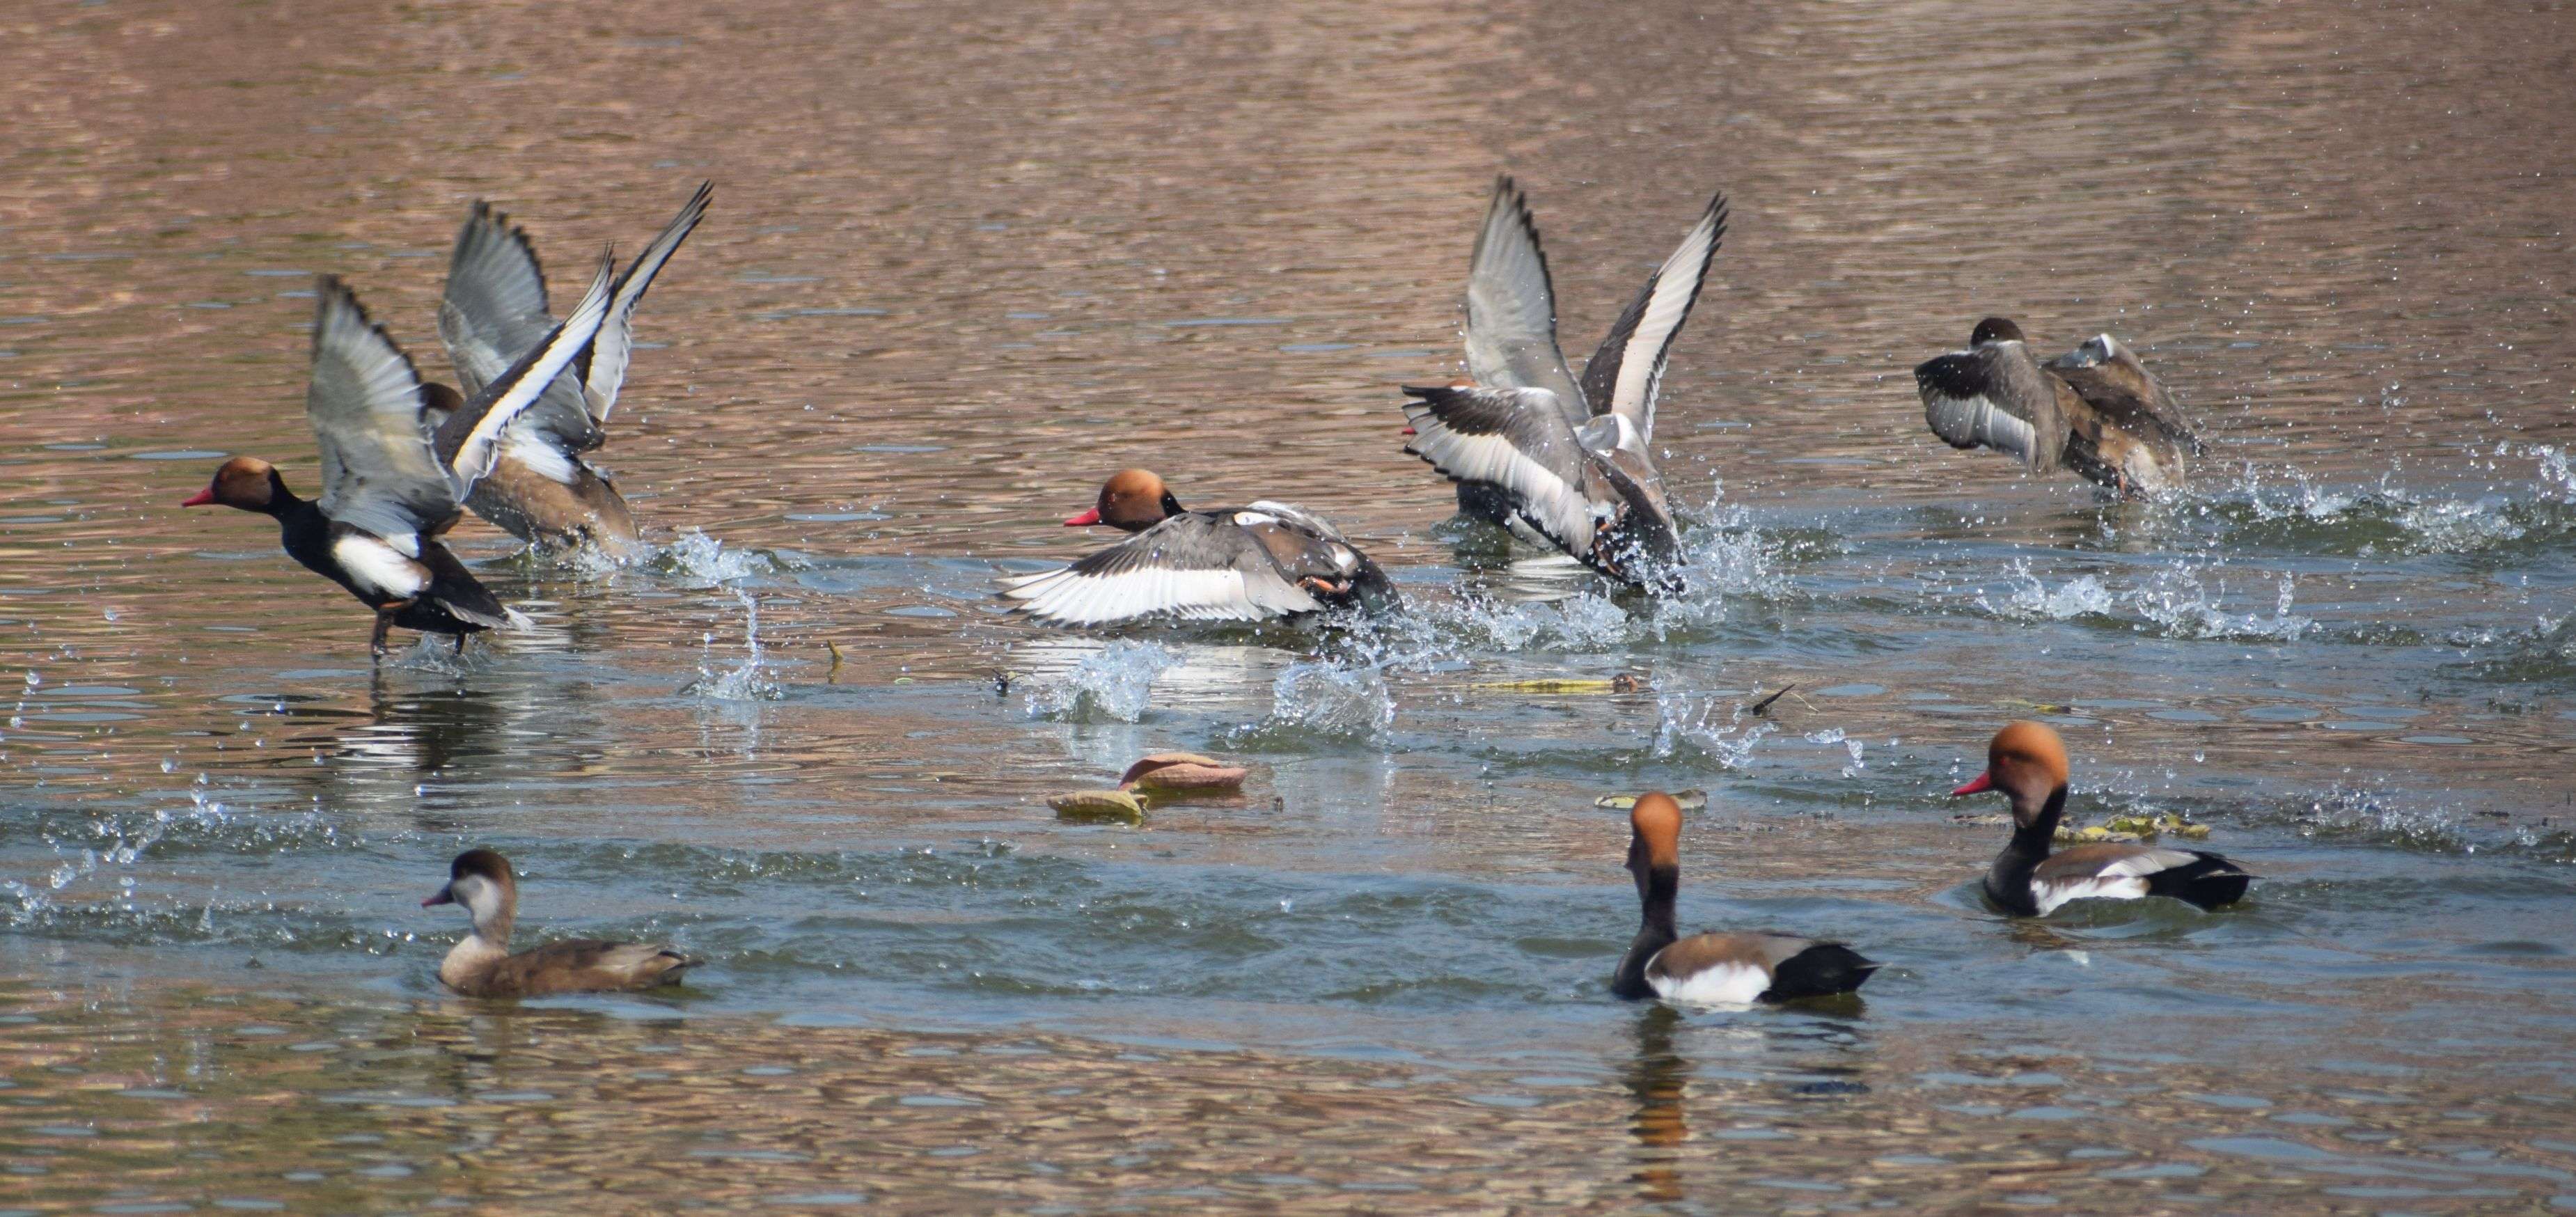 फरवरी माह में भी मचकुंड सरोवर में यूरोपियन पक्षी पोचार्ड का डेरा…देखें तस्वीरें